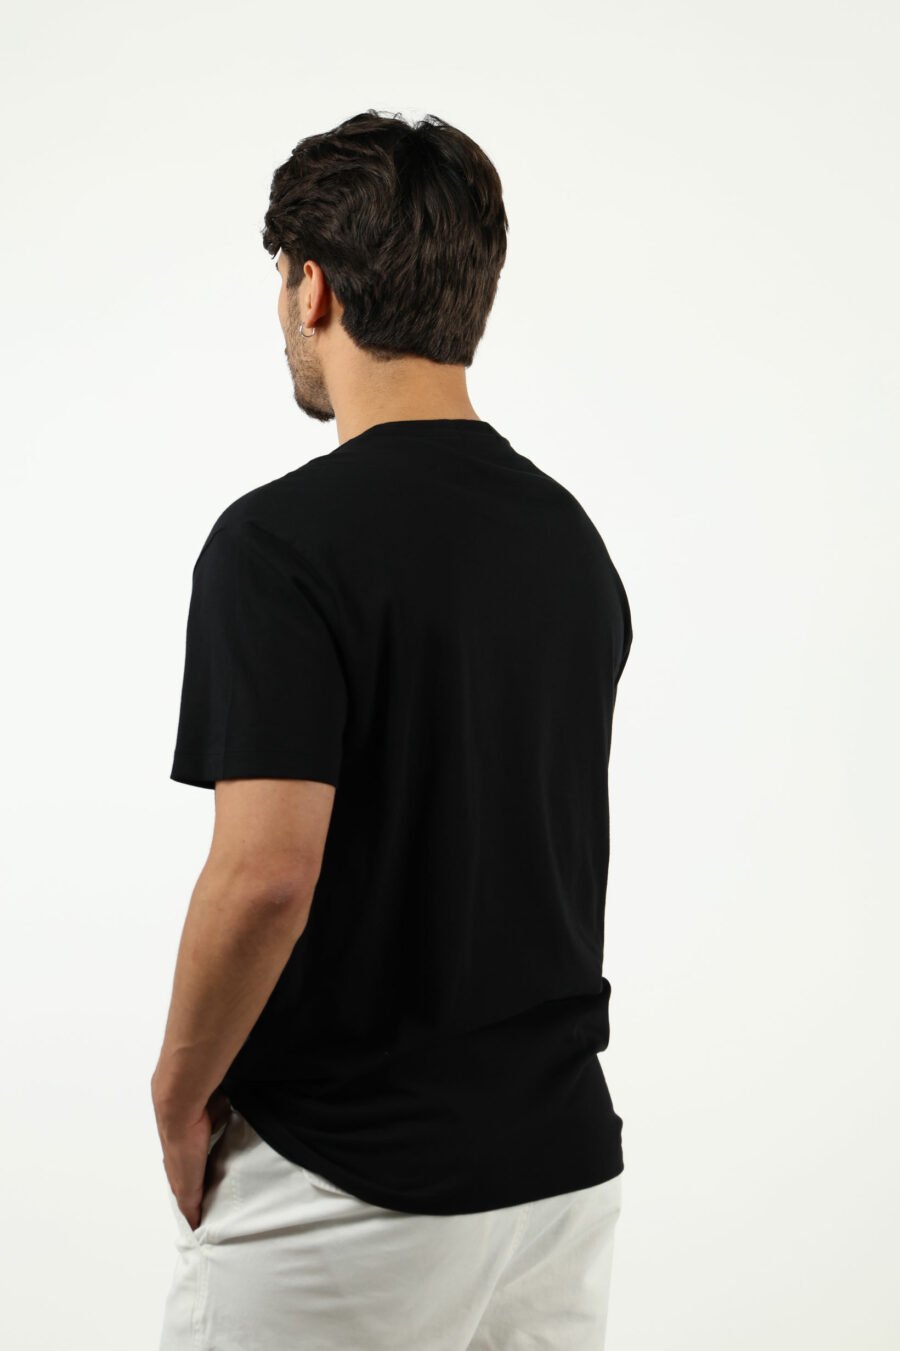 Camiseta negra con maxilogo "polo" en blanco - number14020